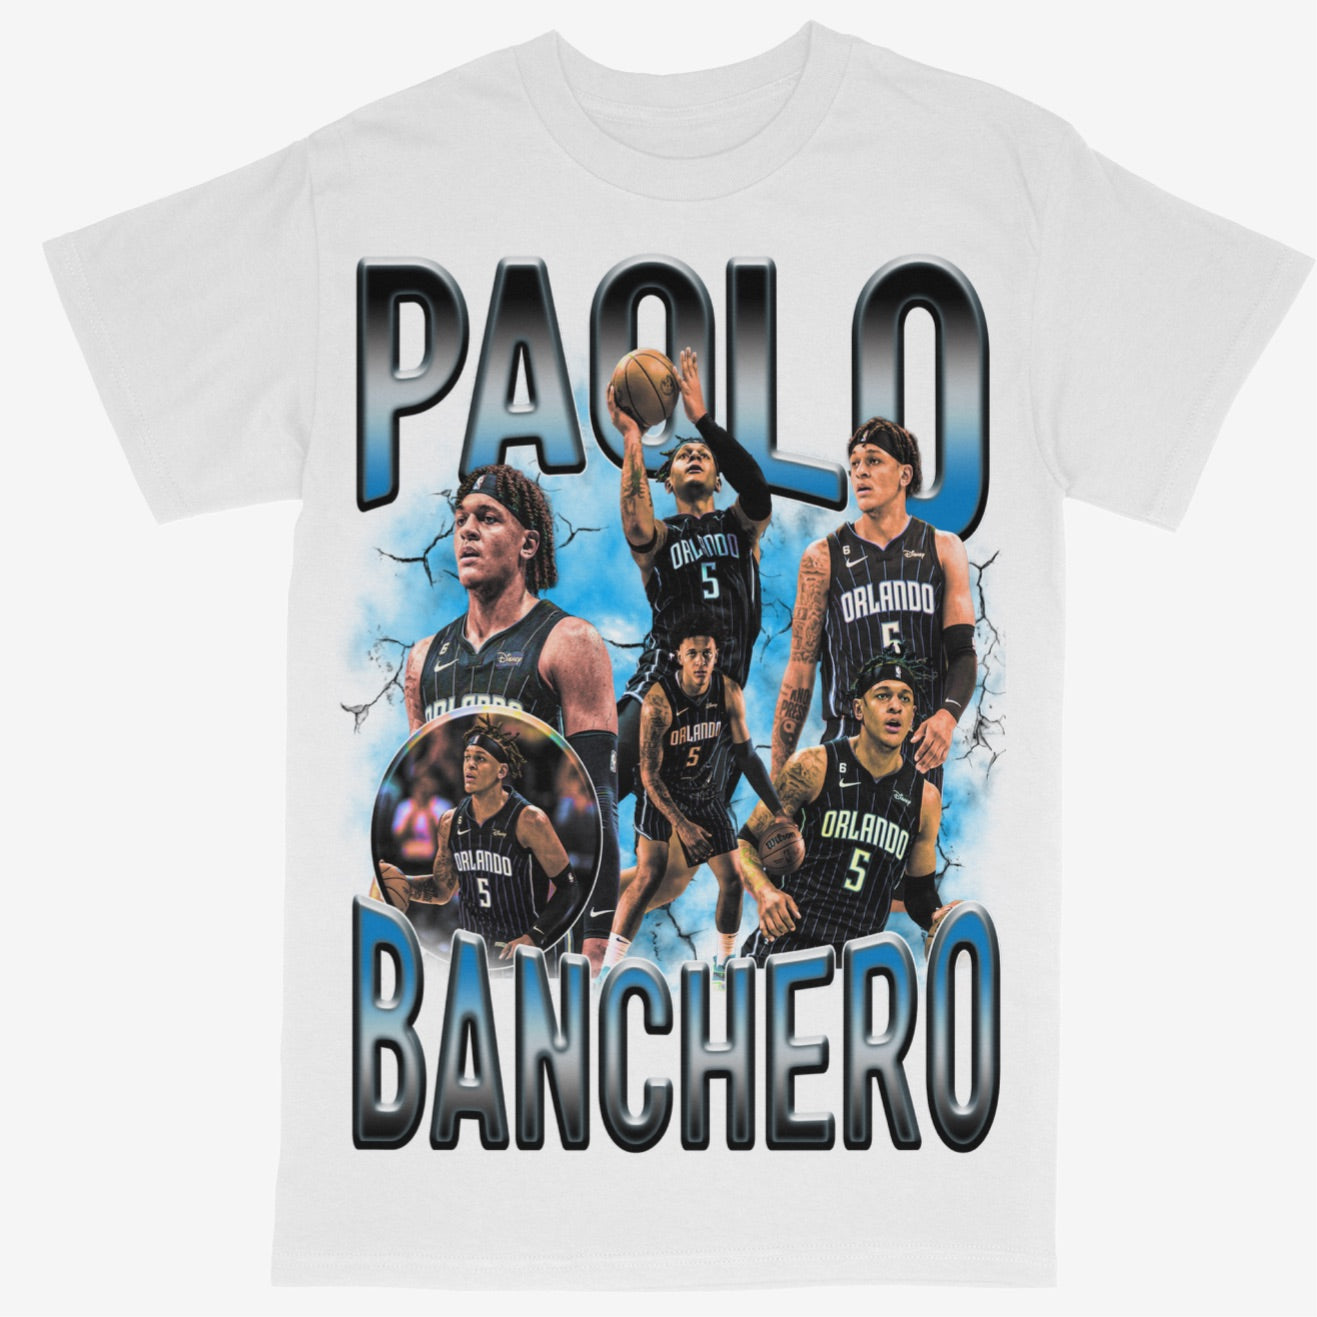 Paolo Banchero Tee Shirt Orlando Magic NBA Basketball